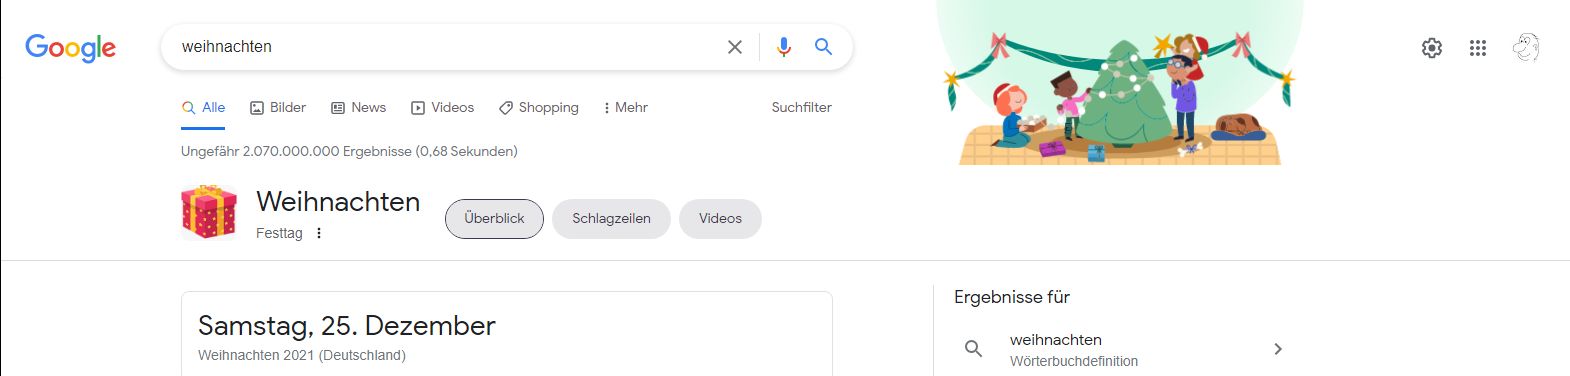 Google Suchergebnis zu Weihnachten 2021